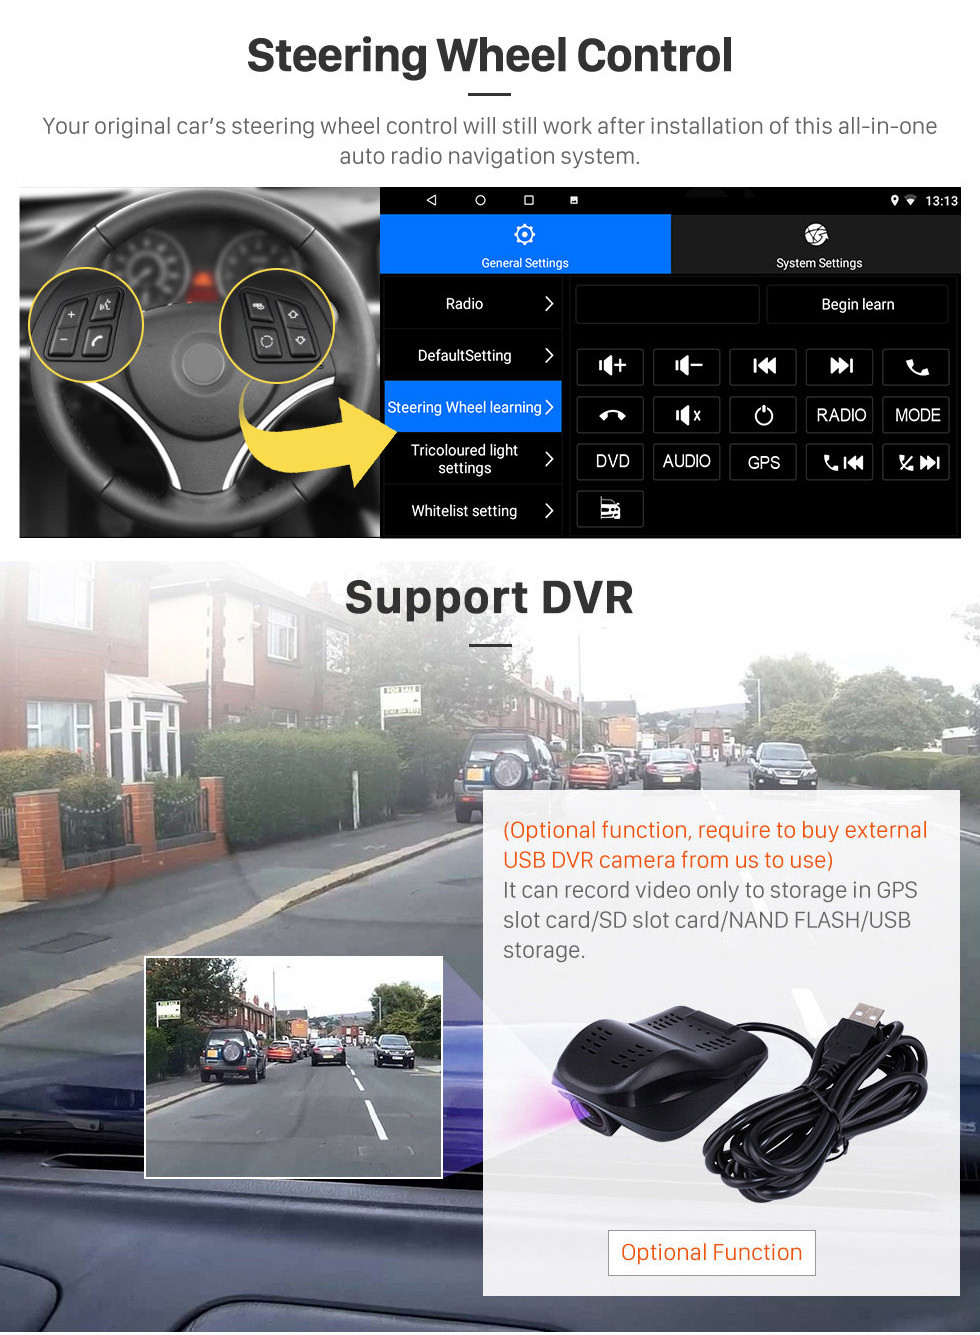 Seicane OEM 9 polegada Android 10.0 Rádio para 2018-2019 Hyundai i20 RHD Bluetooth Wifi HD Touchscreen Suporte de Navegação GPS Carplay DVR OBD Retrovisor câmera